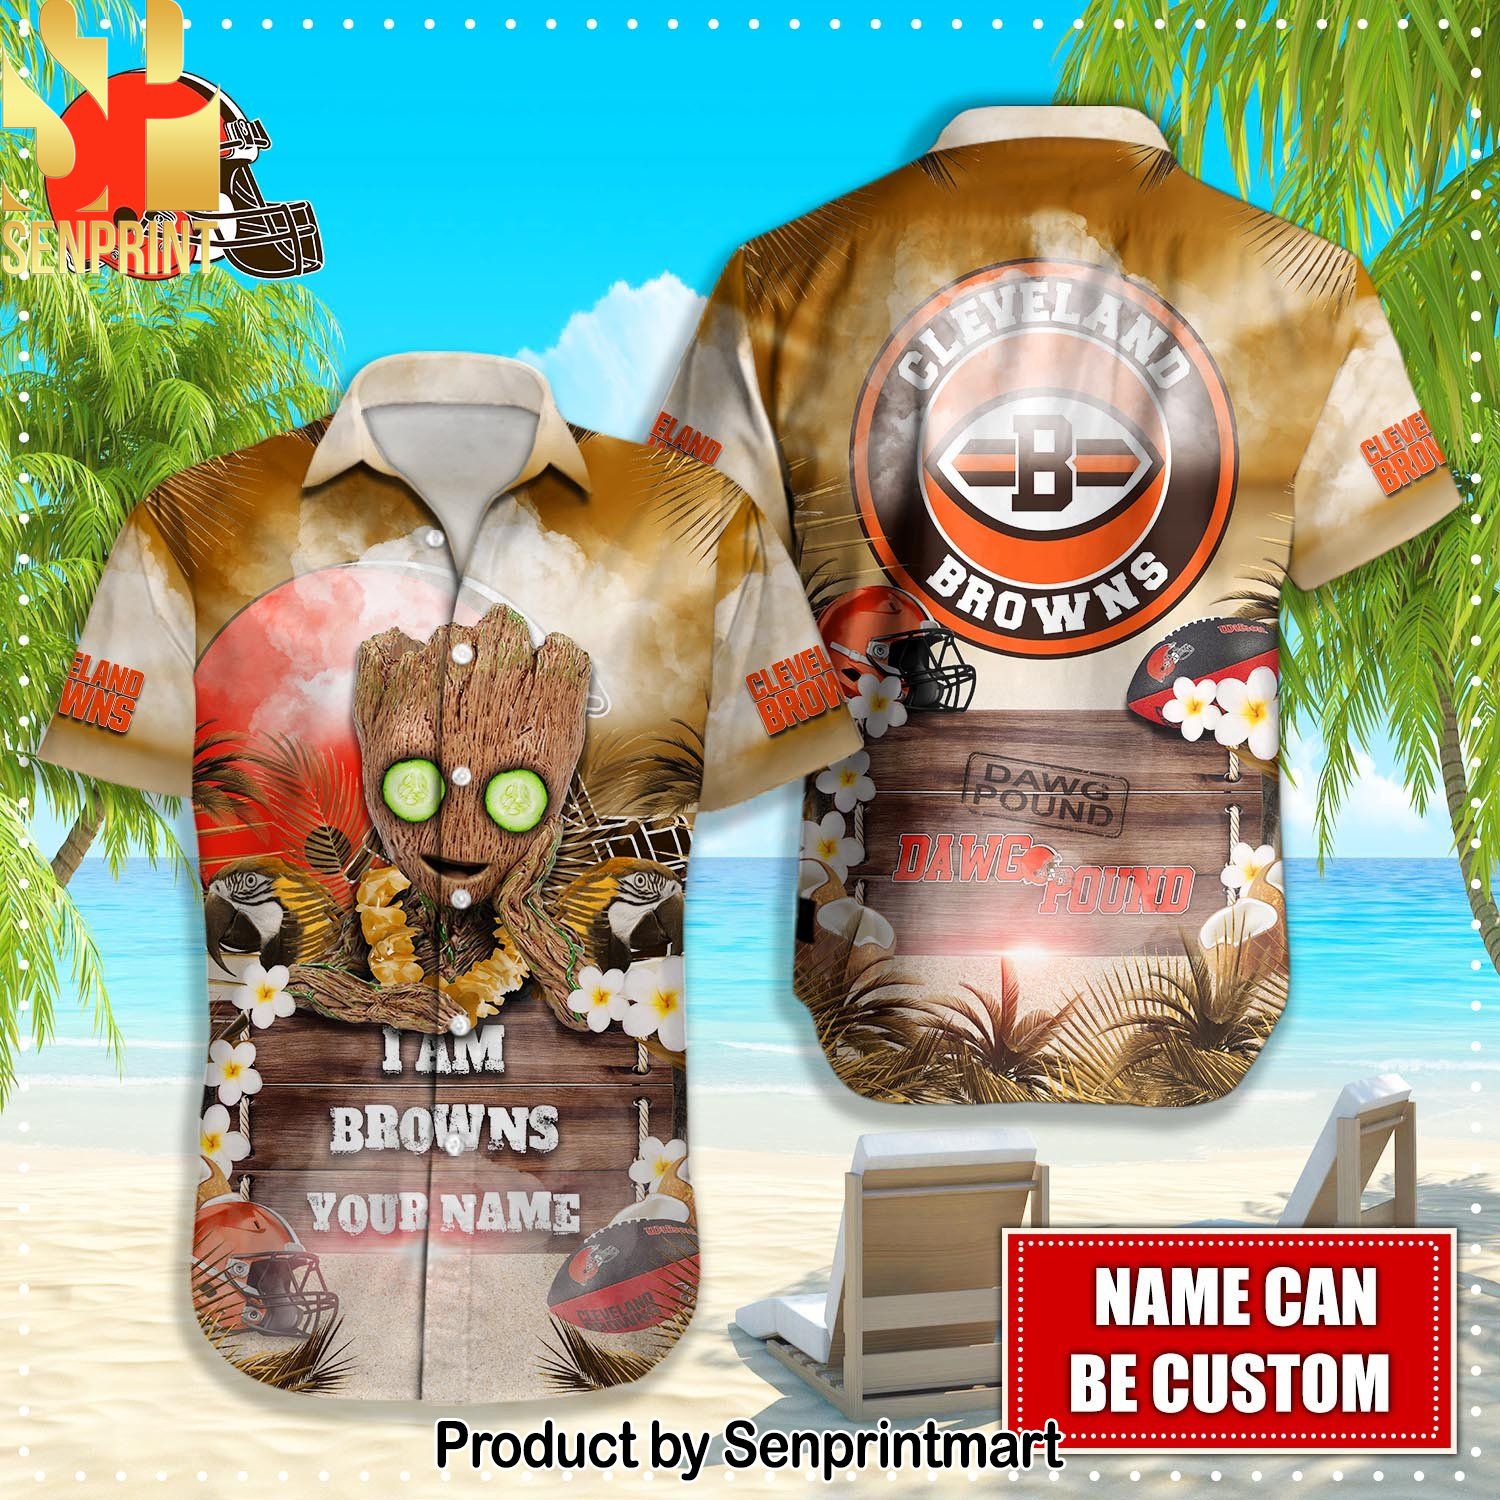 Cleveland Browns NFL Hot Fashion Hawaiian Shirt and Shorts